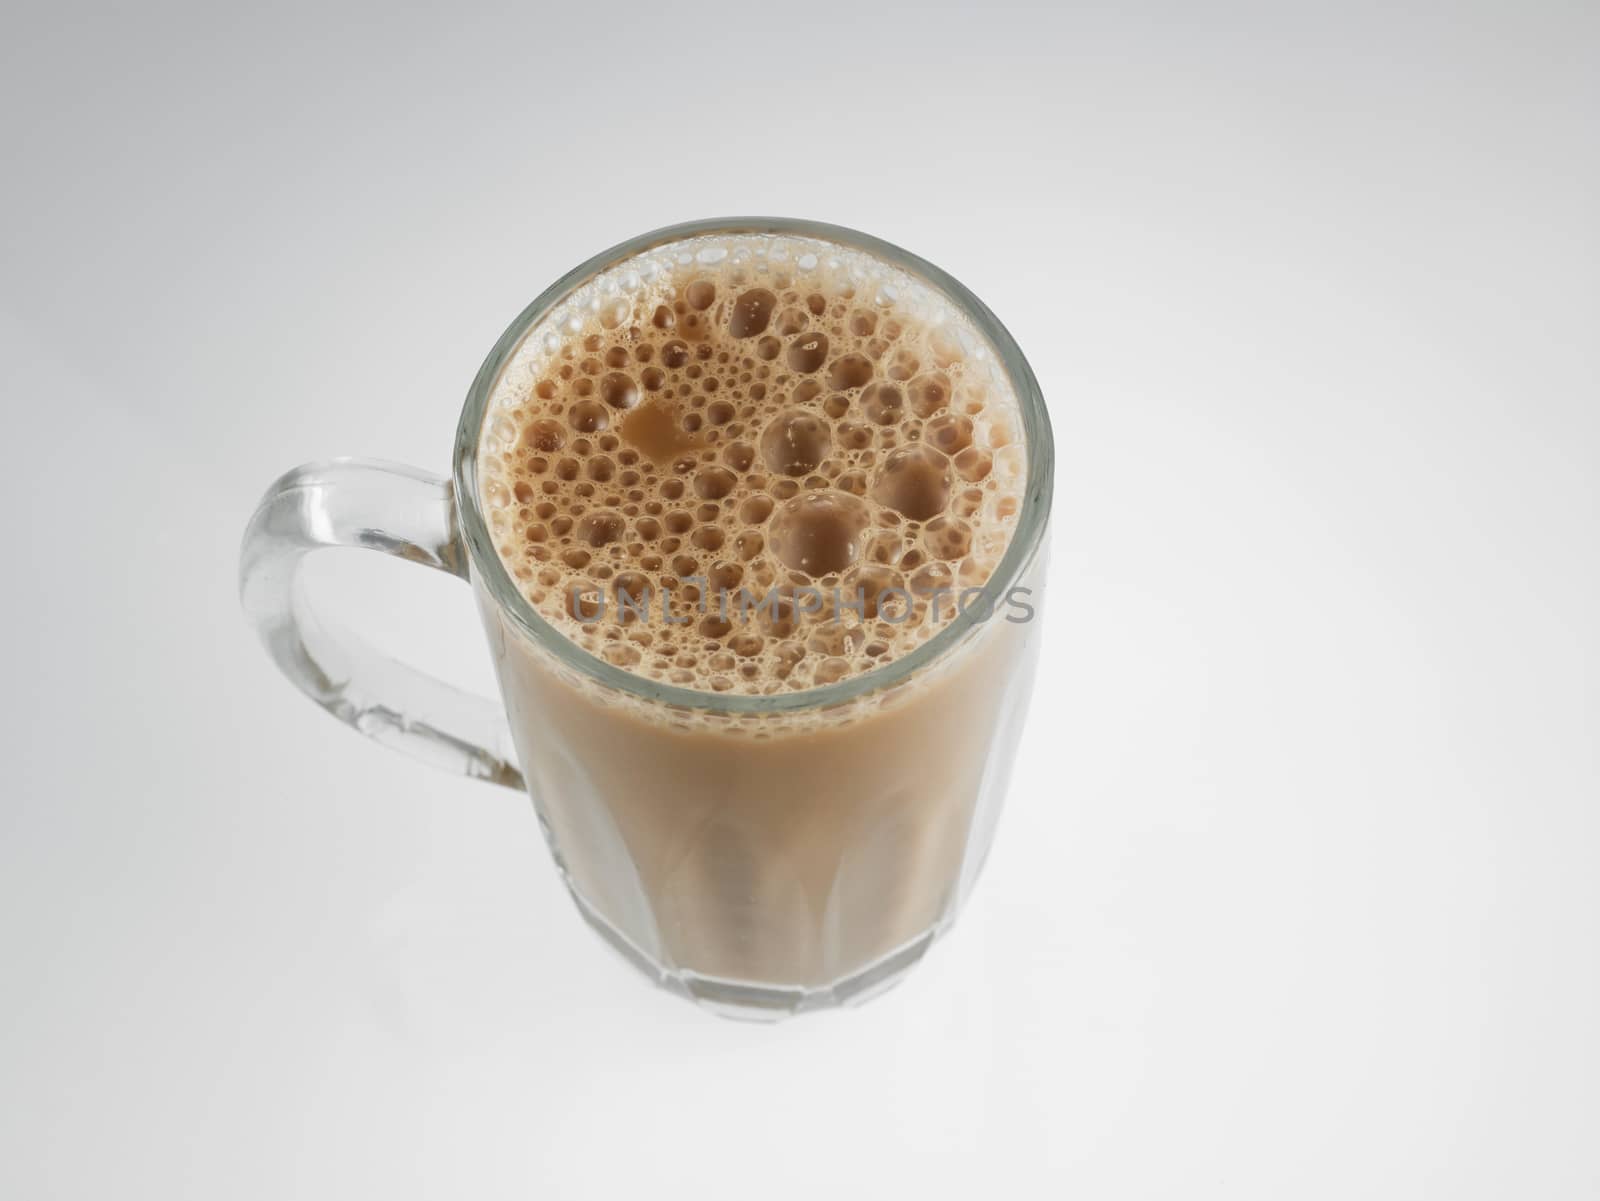 Top view Tea with milk or Teh Tarik in Malaysia